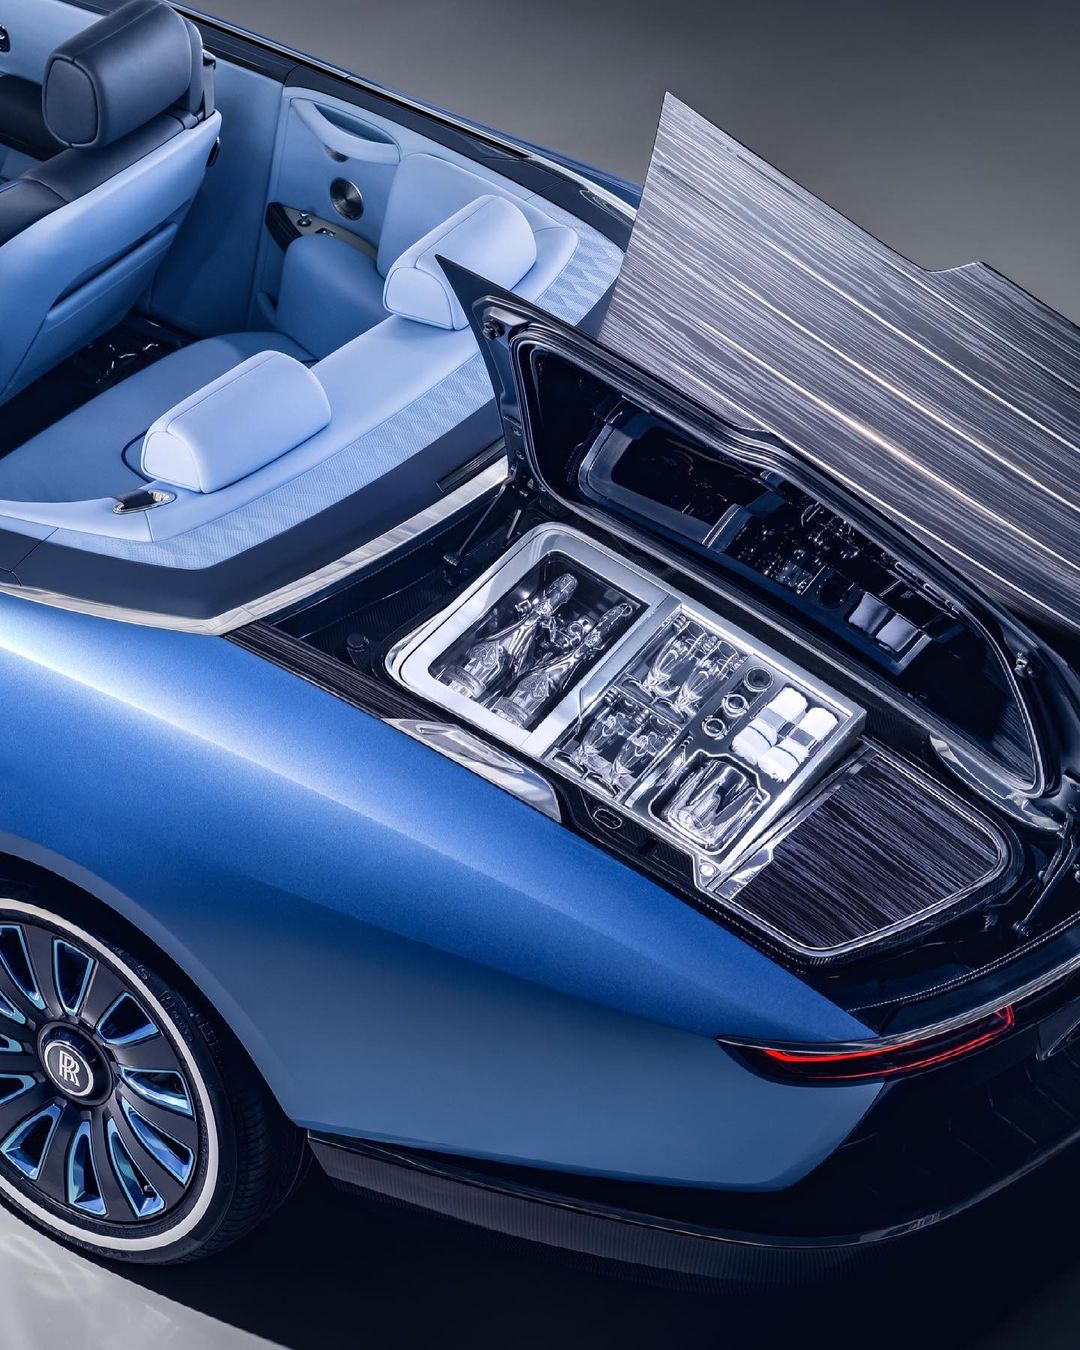 Бейонсе и Джей-Зи приобрели Rolls-Royce Boat Tail за $28 млн – самое дорогое авто в мире